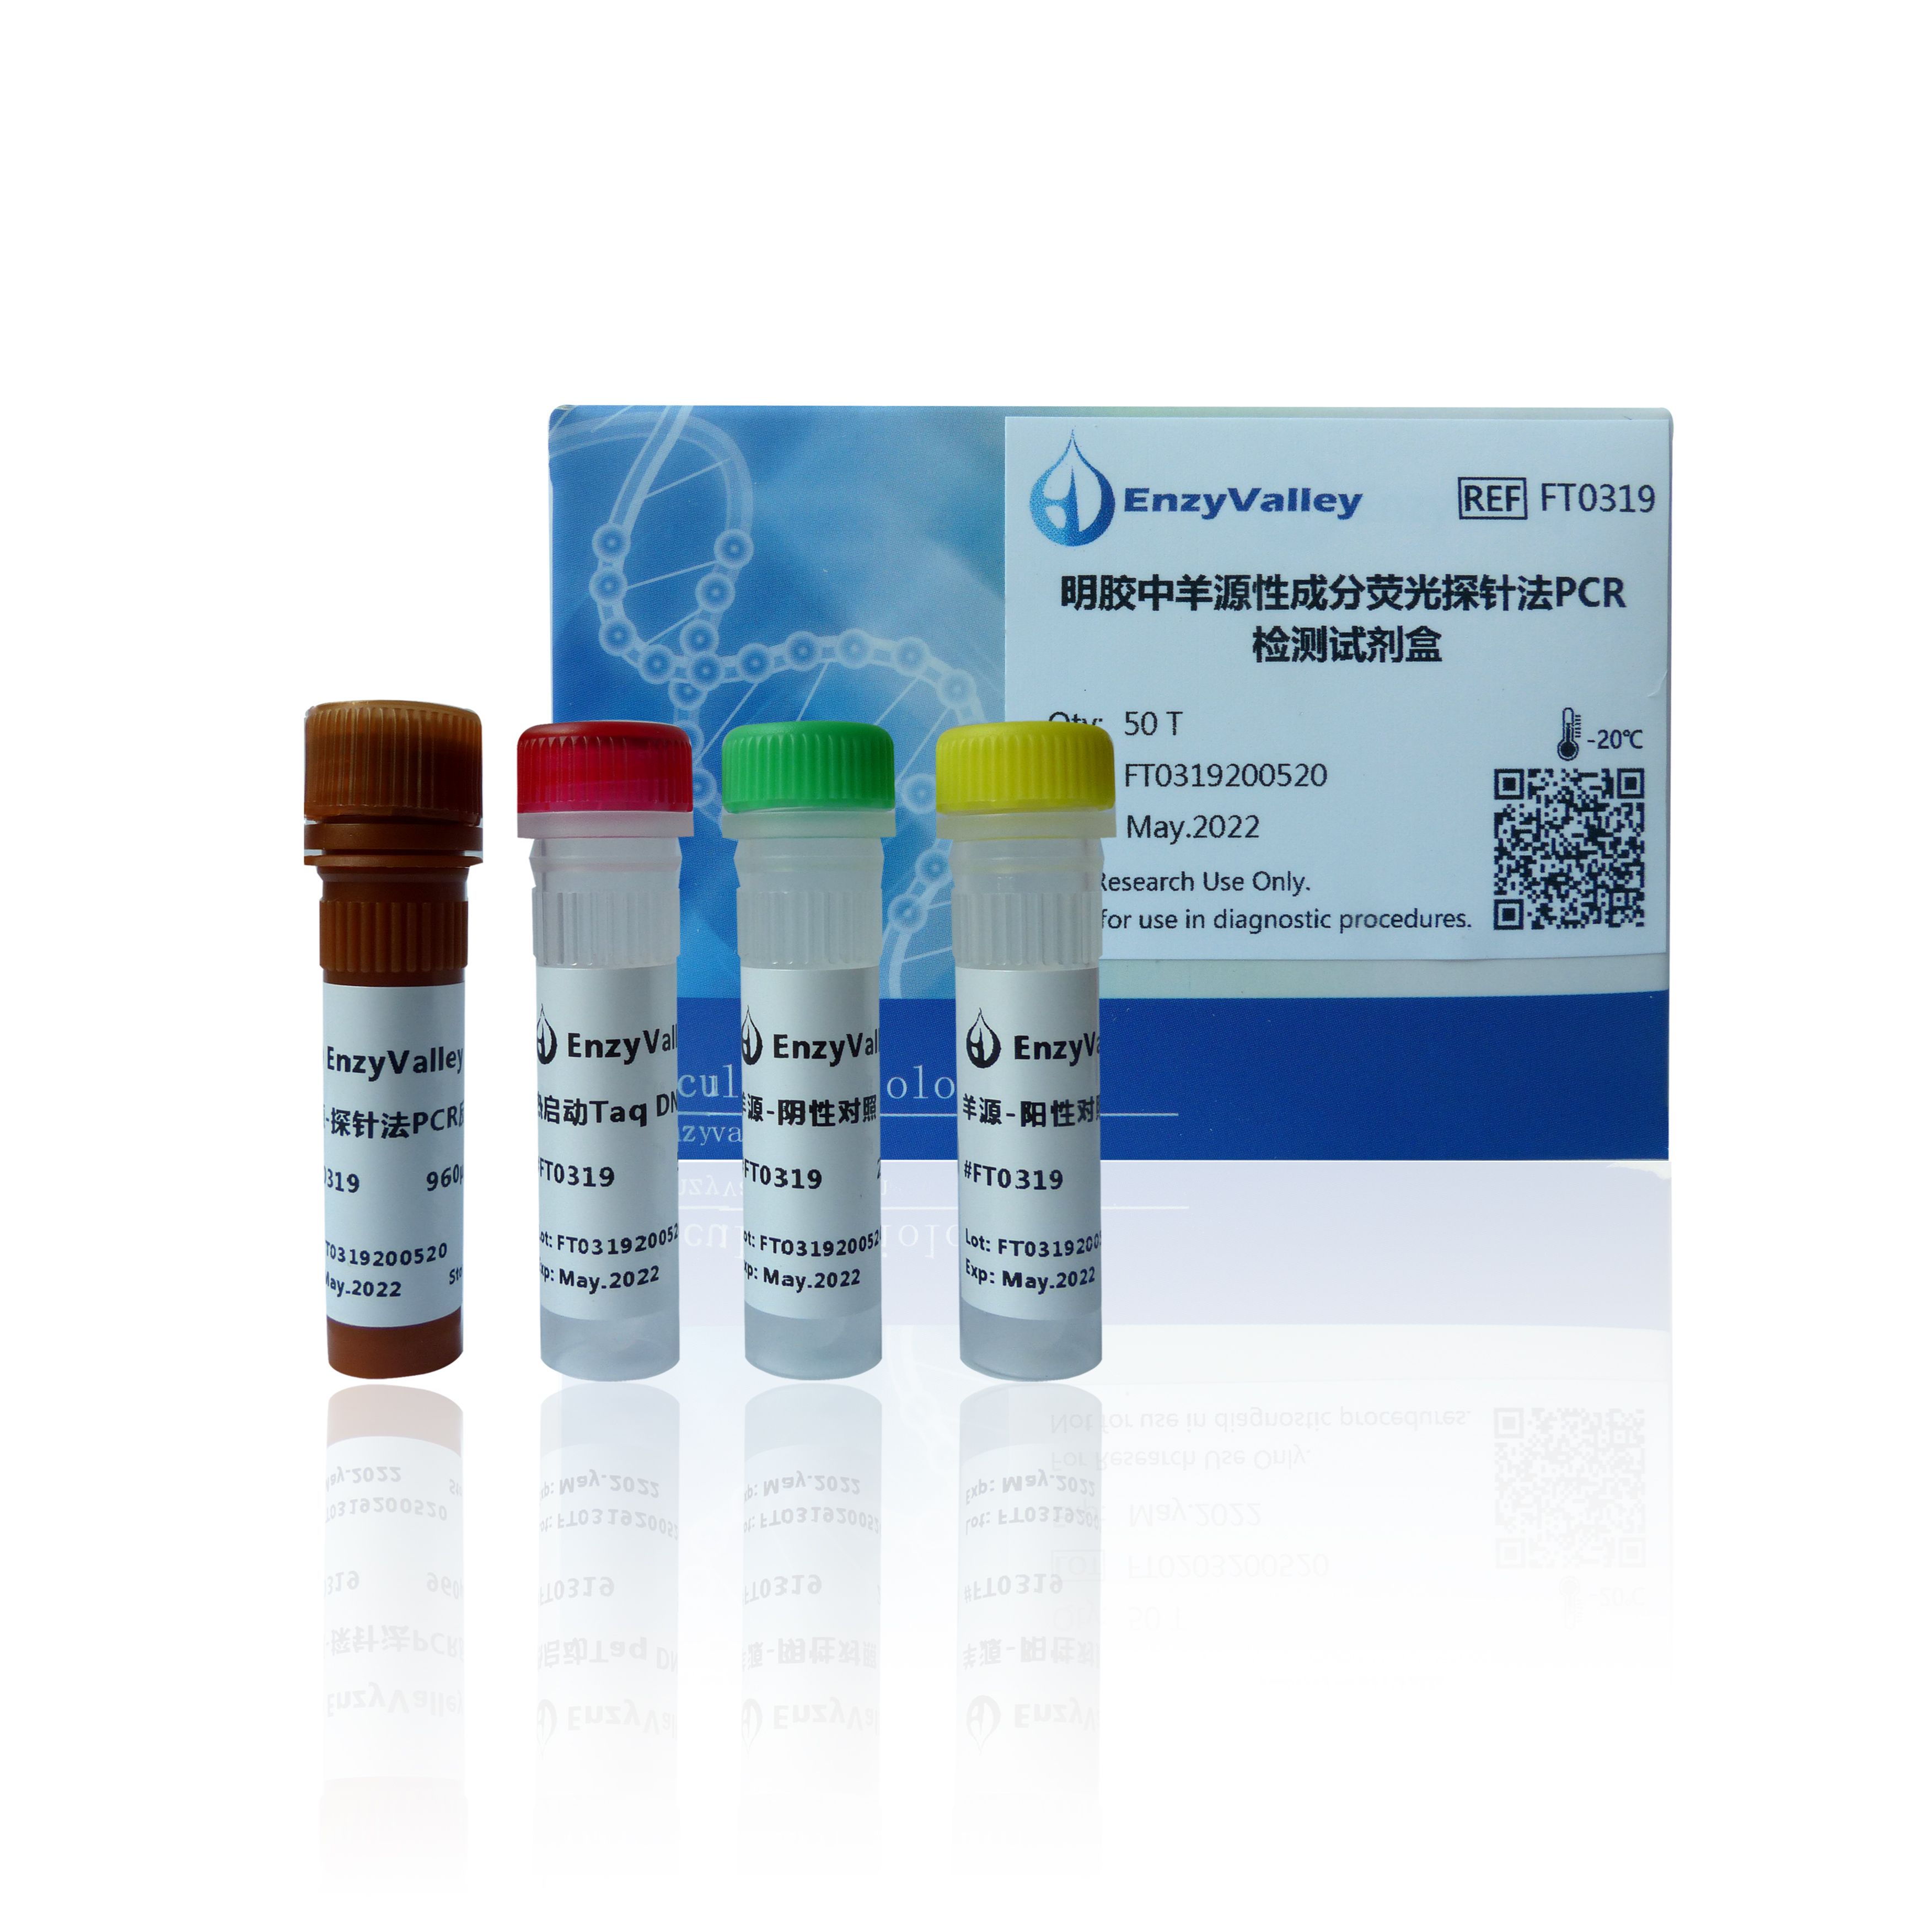 明膠中羊源性成分熒光探針法PCR檢測試劑盒 